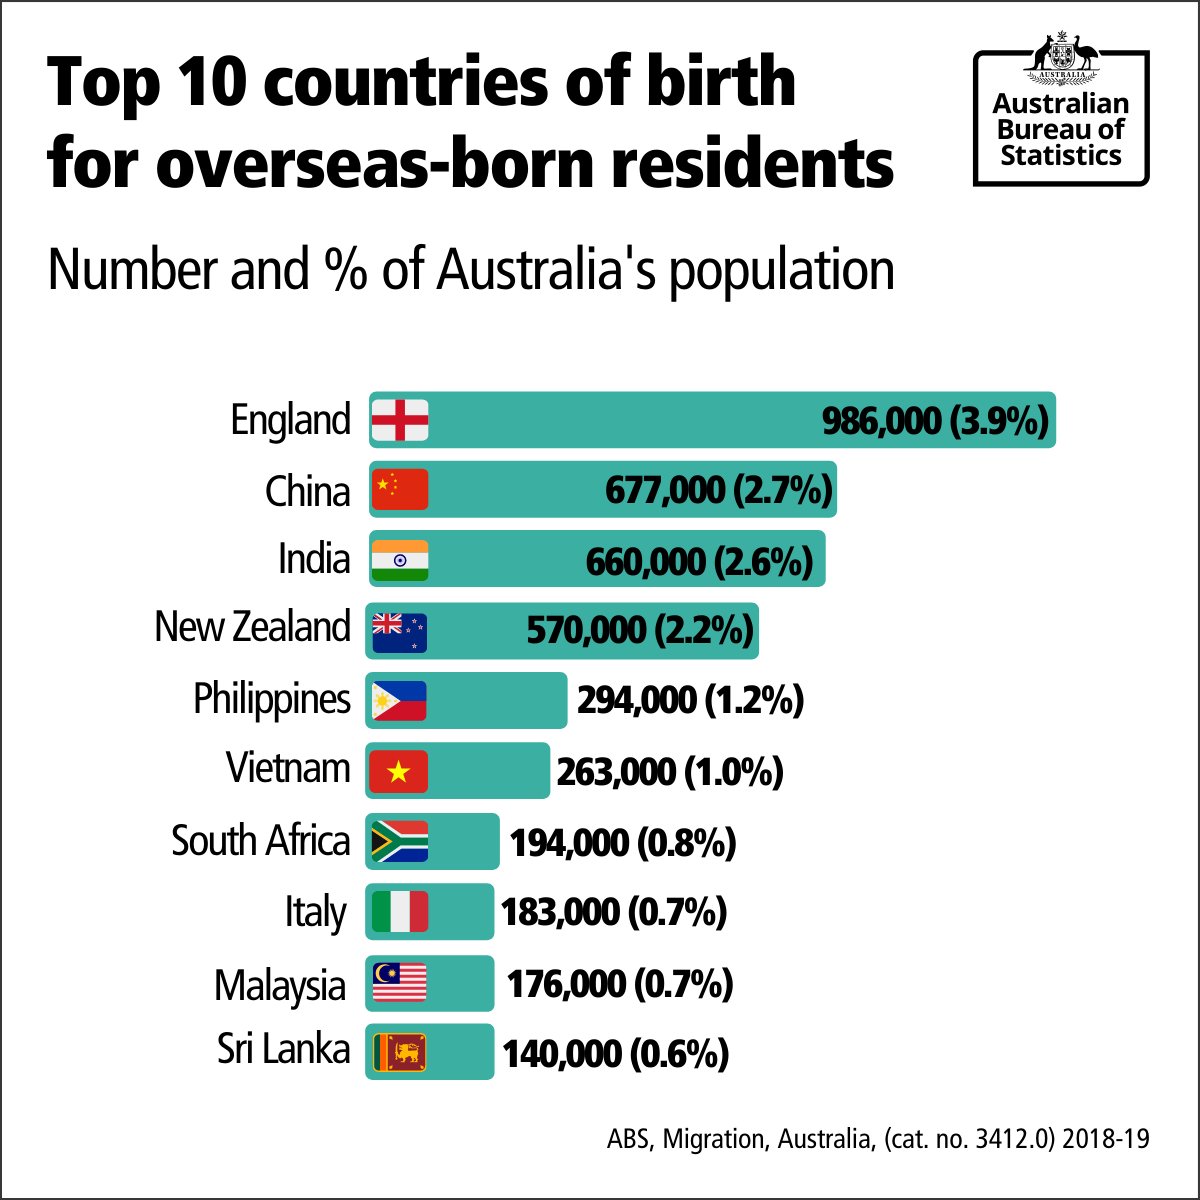 تويتر \ Australian Bureau of Statistics على تويتر: "Check out the top 10 countries of birth for who have migrated to Australia. Those born in England were the largest group, with